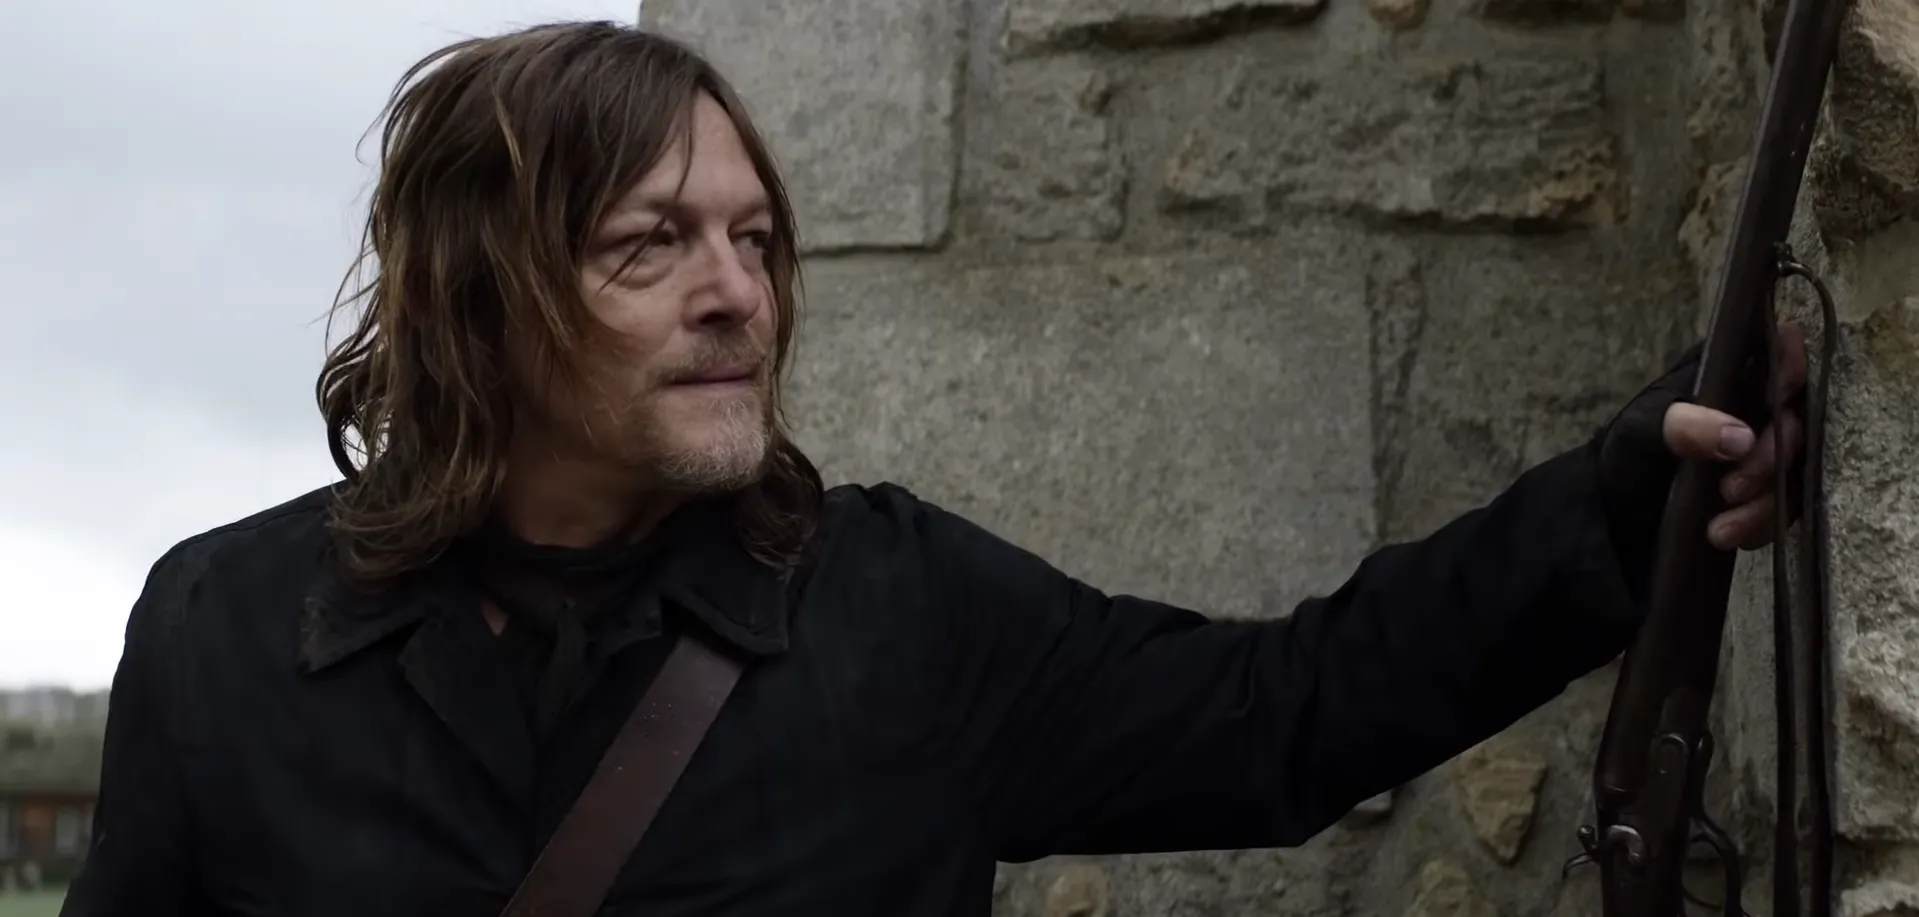 The Walking Dead: Daryl Dixon Season 2 New Trailer Breakdown & Release Date